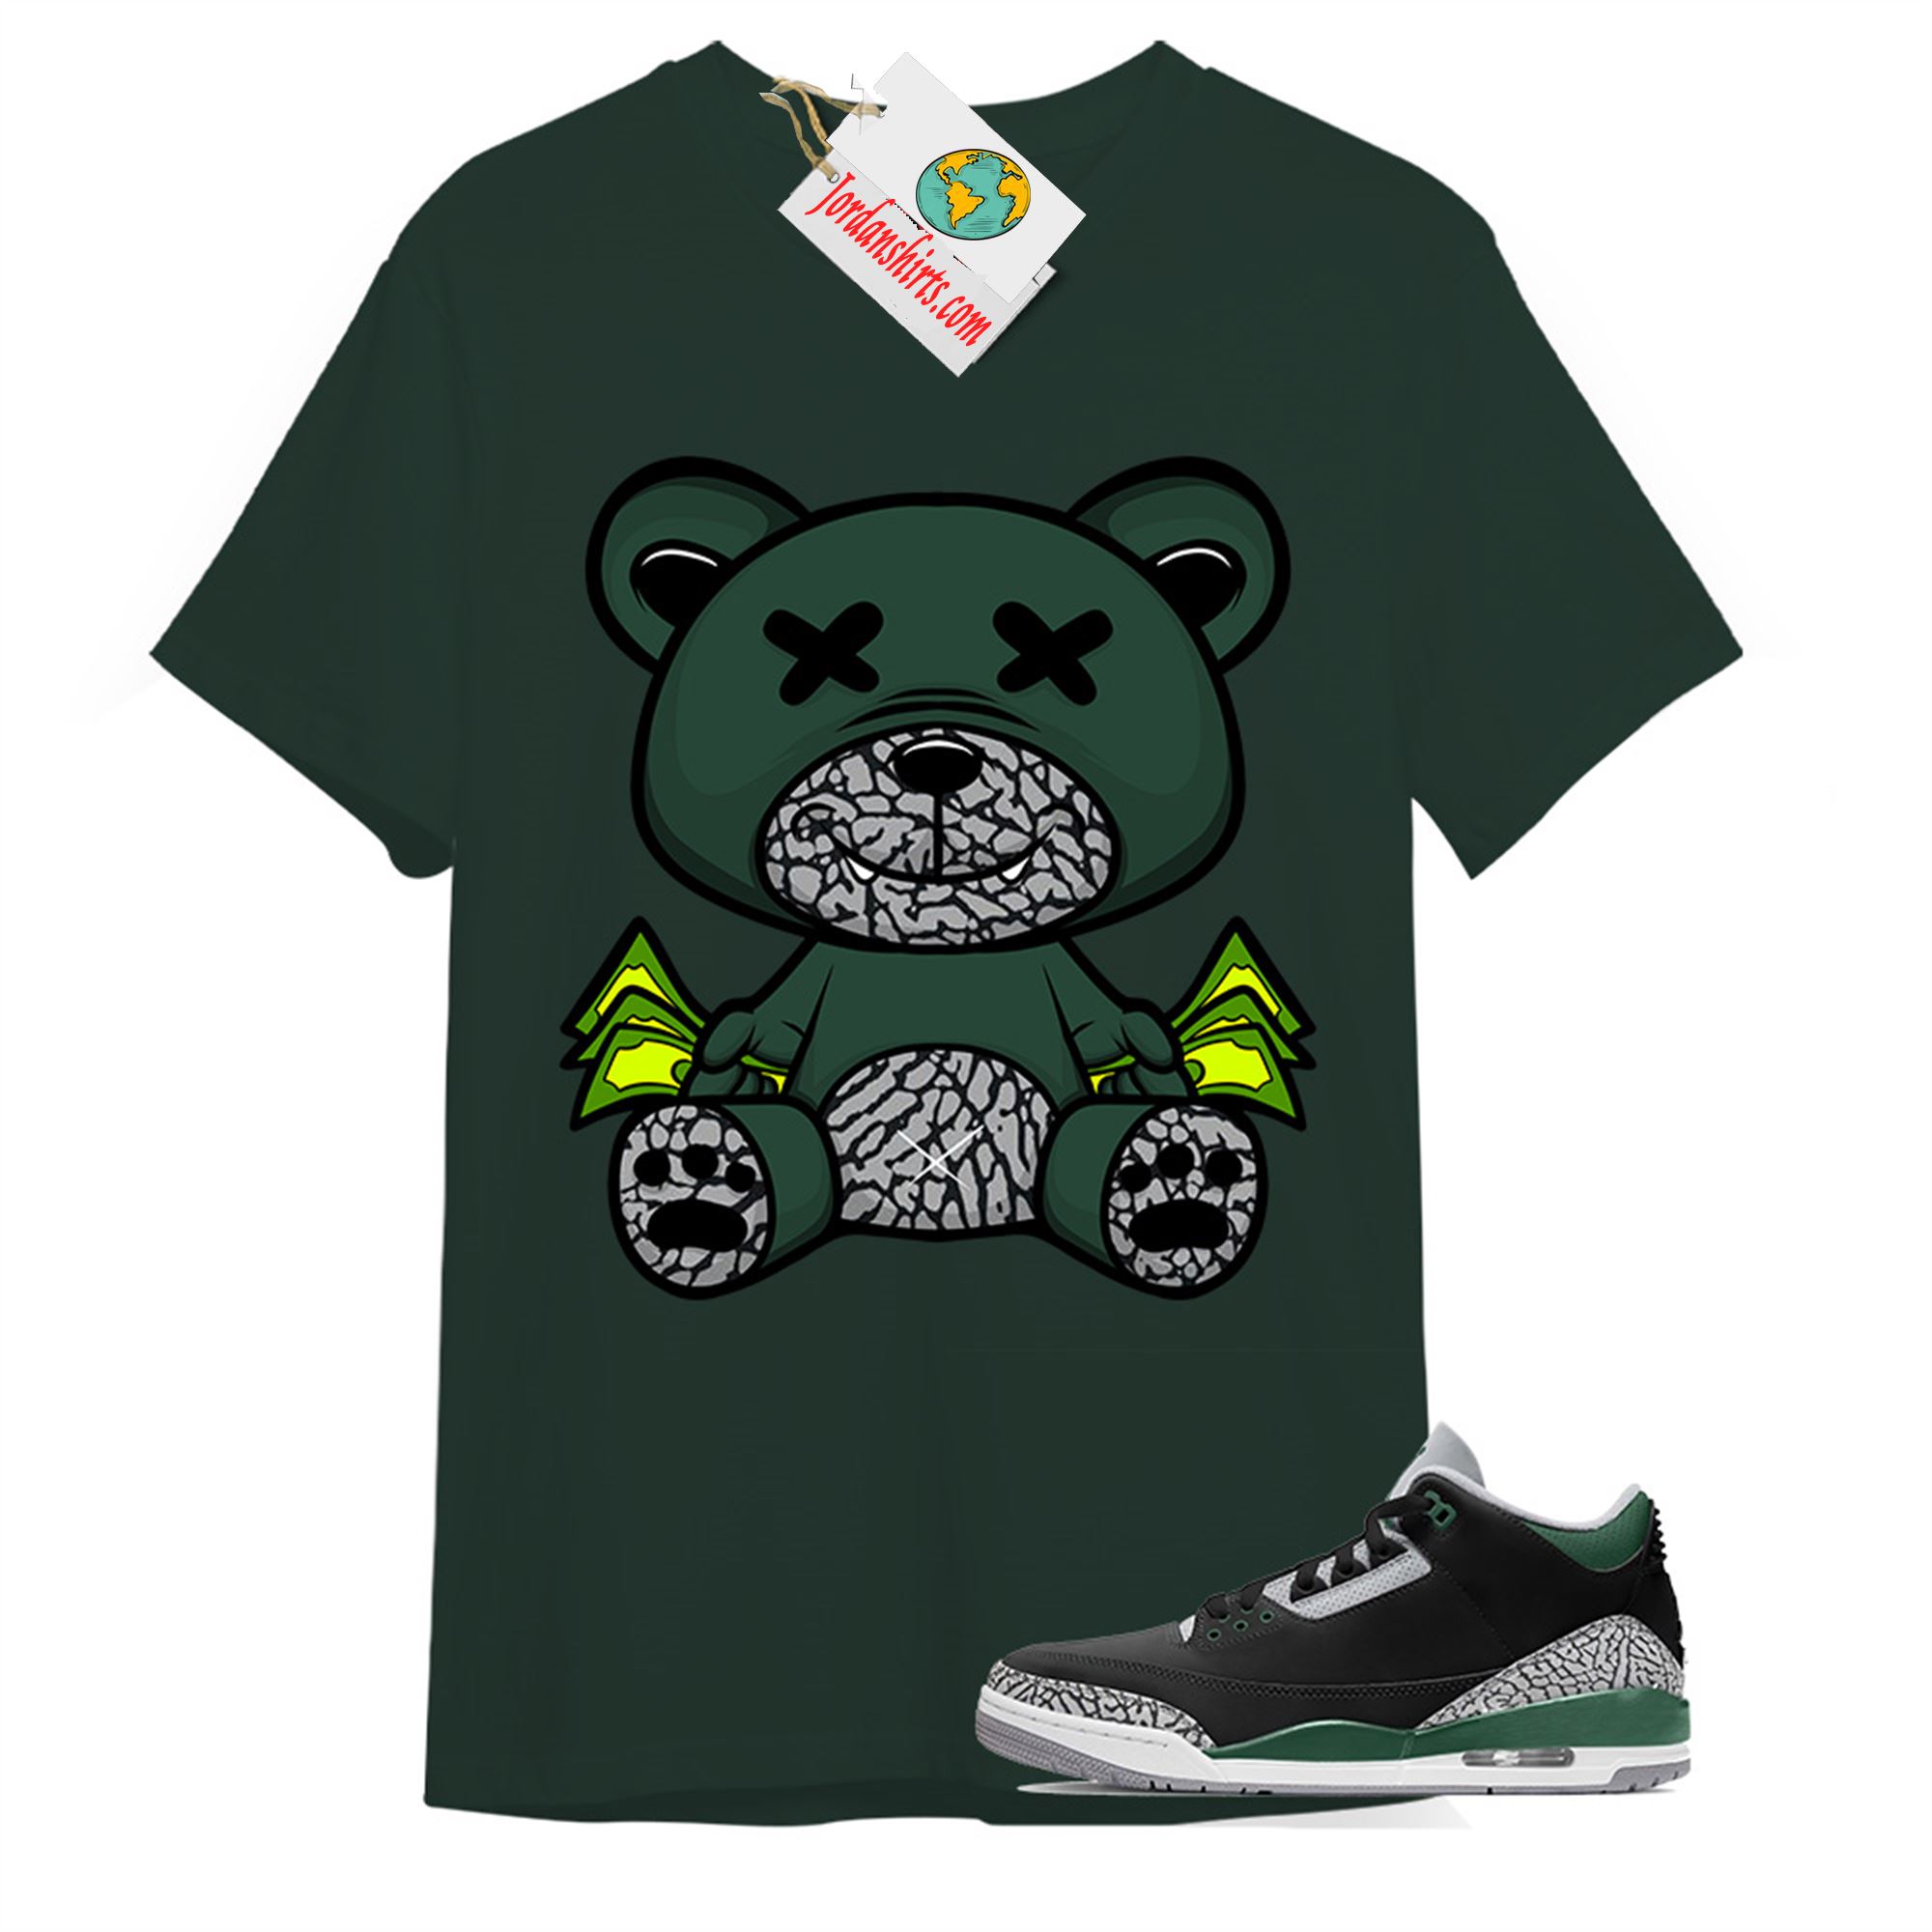 Jordan 3 Shirt, Rich Teddy Bear Forest Green T-shirt Air Jordan 3 Pine Green 3s Plus Size Up To 5xl